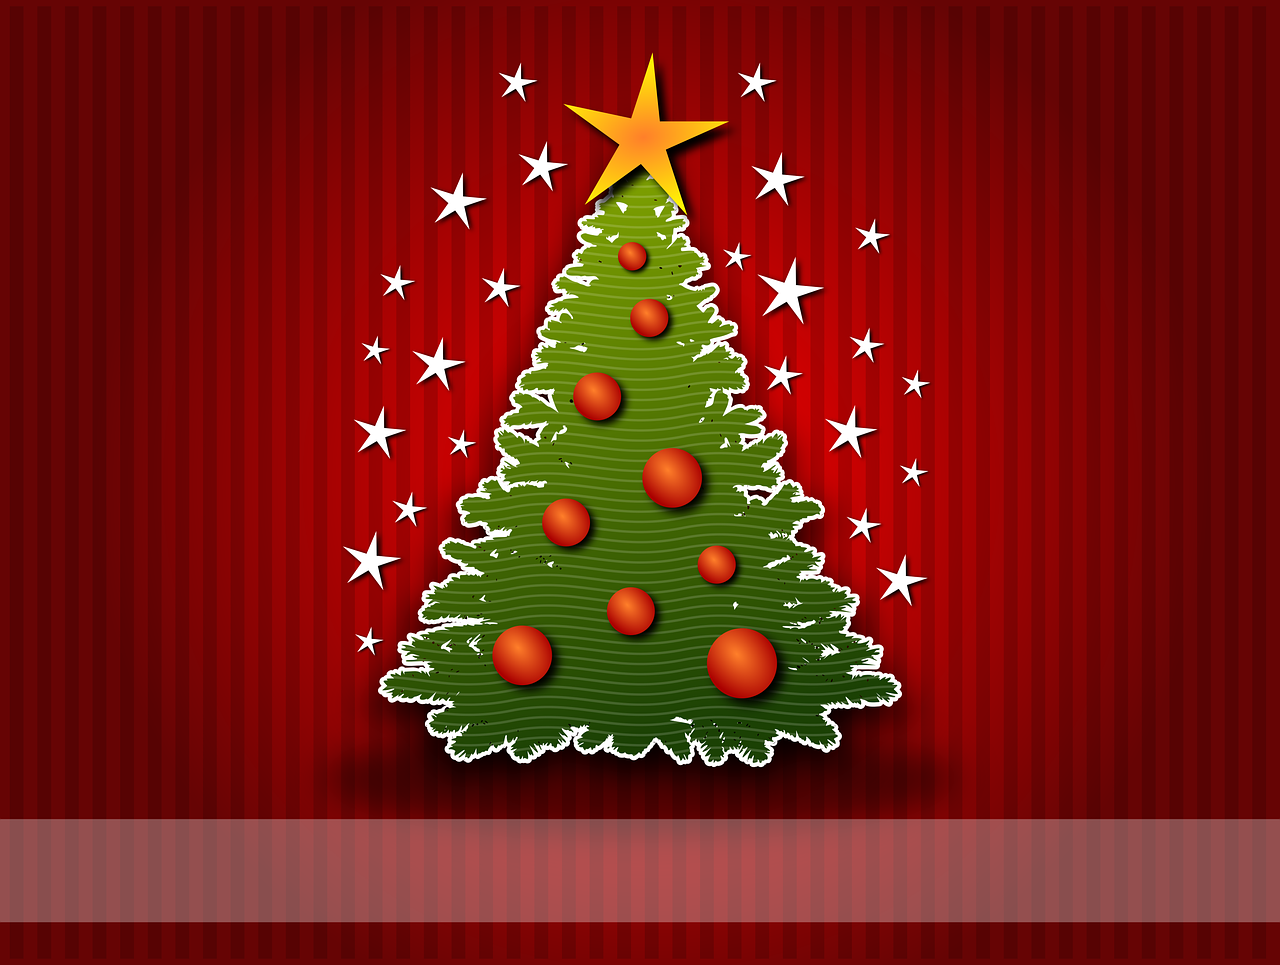 Kalėdos, Ornamentas, Kalėdinis Ornamentas, Rutuliai, Raudona, Žalias, Paštas, Kortelė, Filialas, Pinheiro